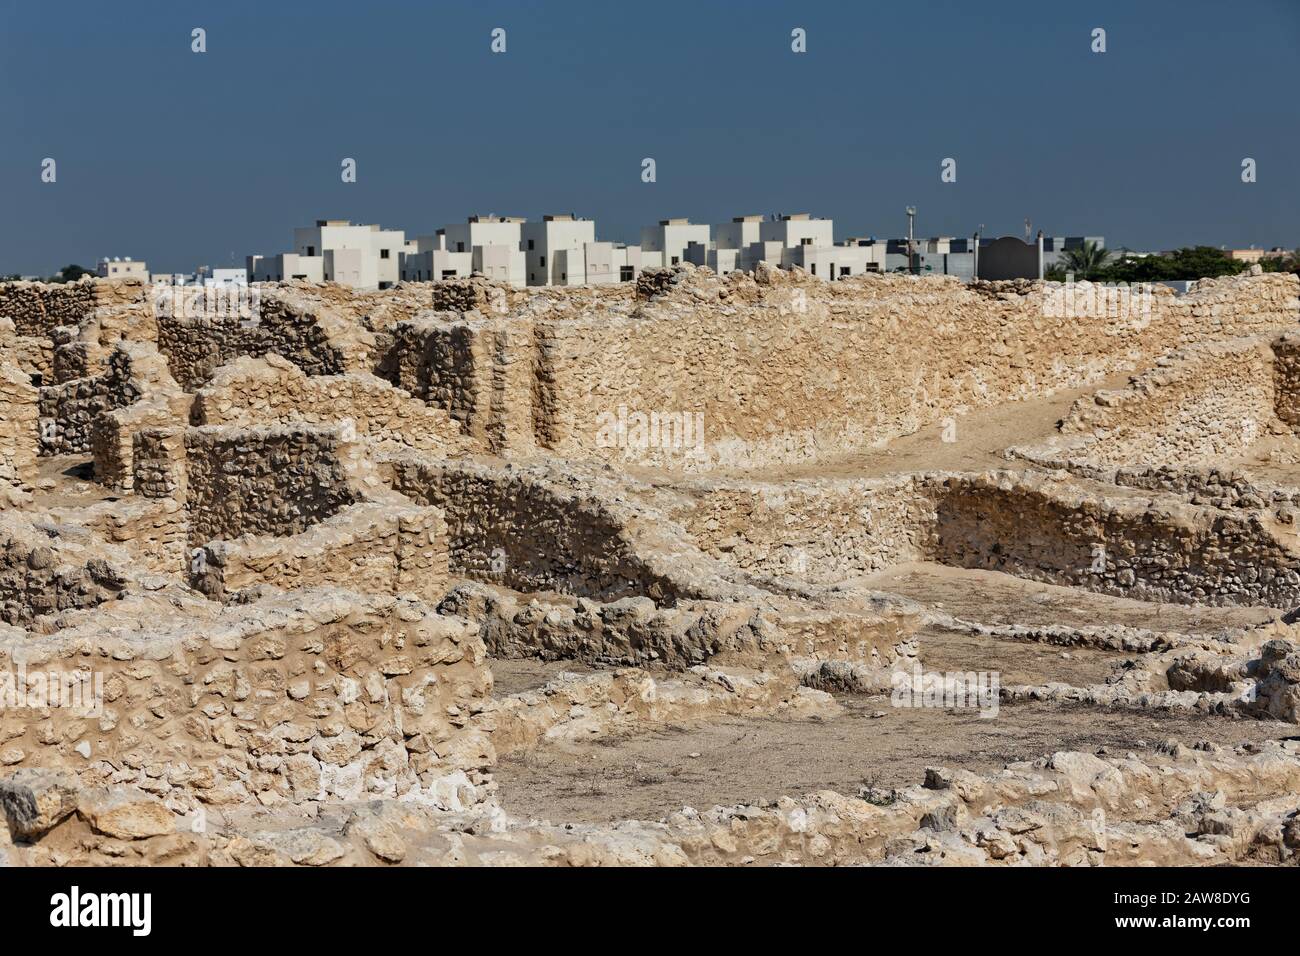 Asentamiento de la era Dilmun, situado en las afueras de Saar., Reino de Bahrein. Foto de stock